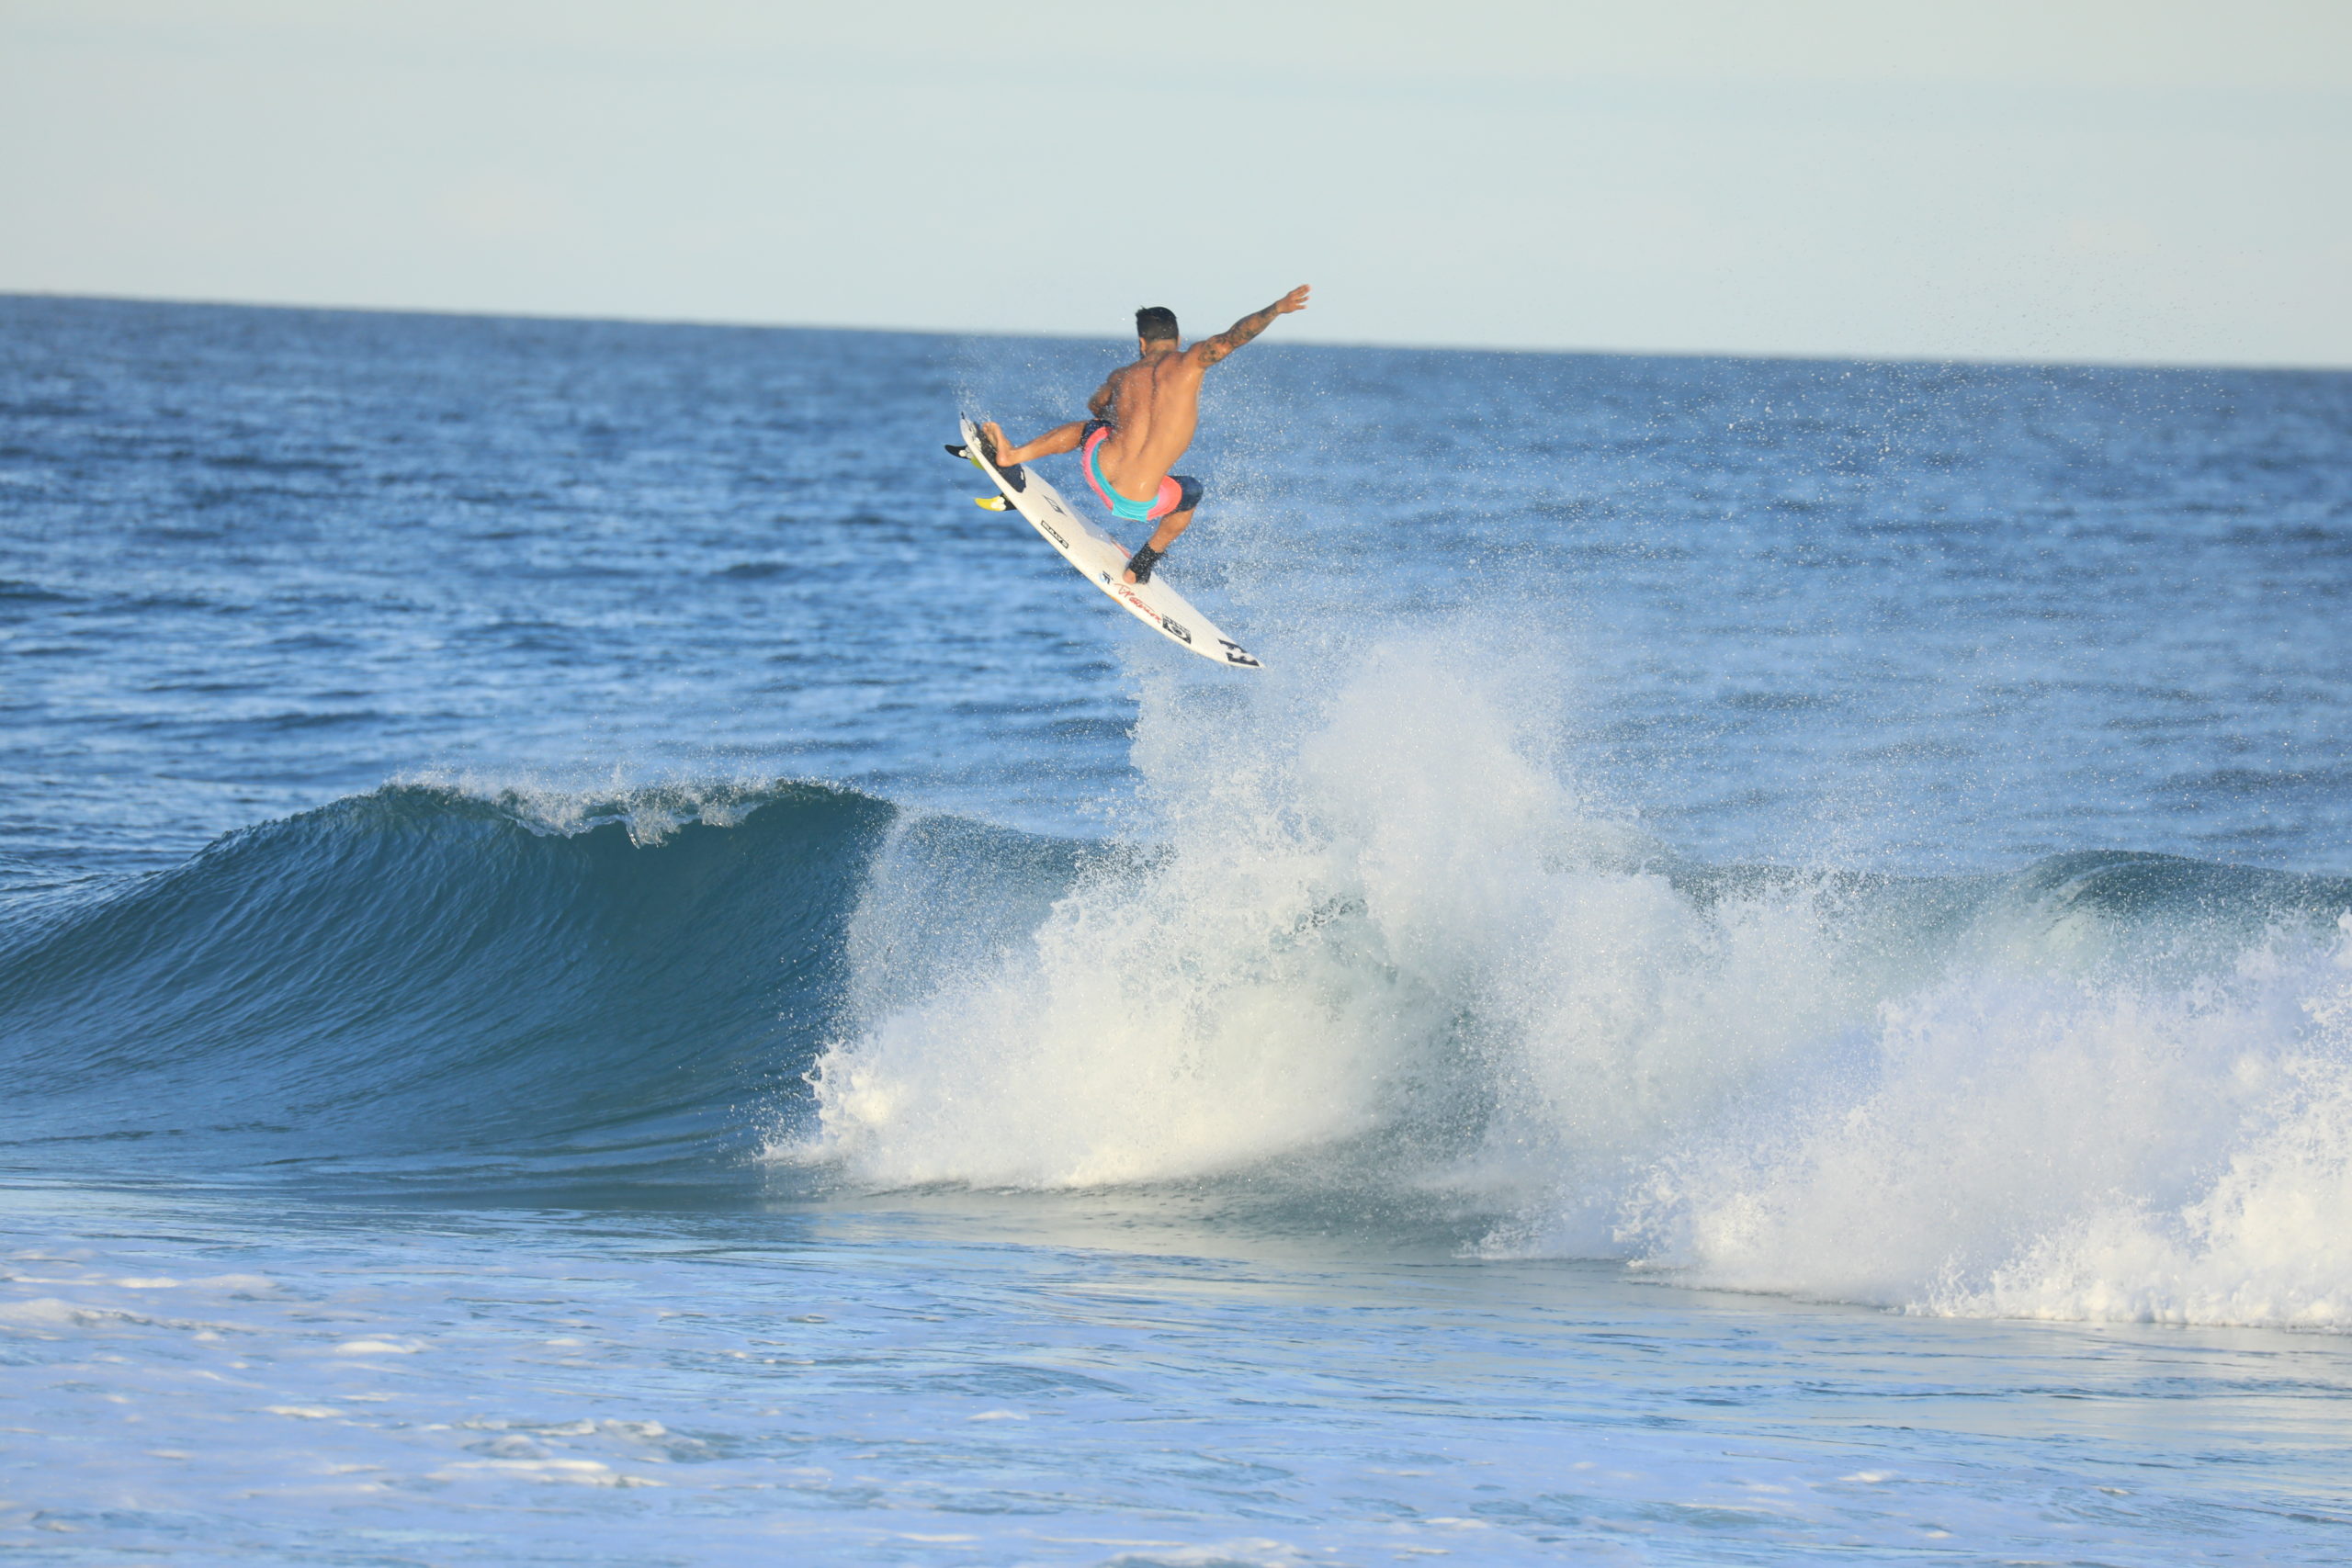 SuperSurf: 160 surfistas de 13 estados - HARDCORE